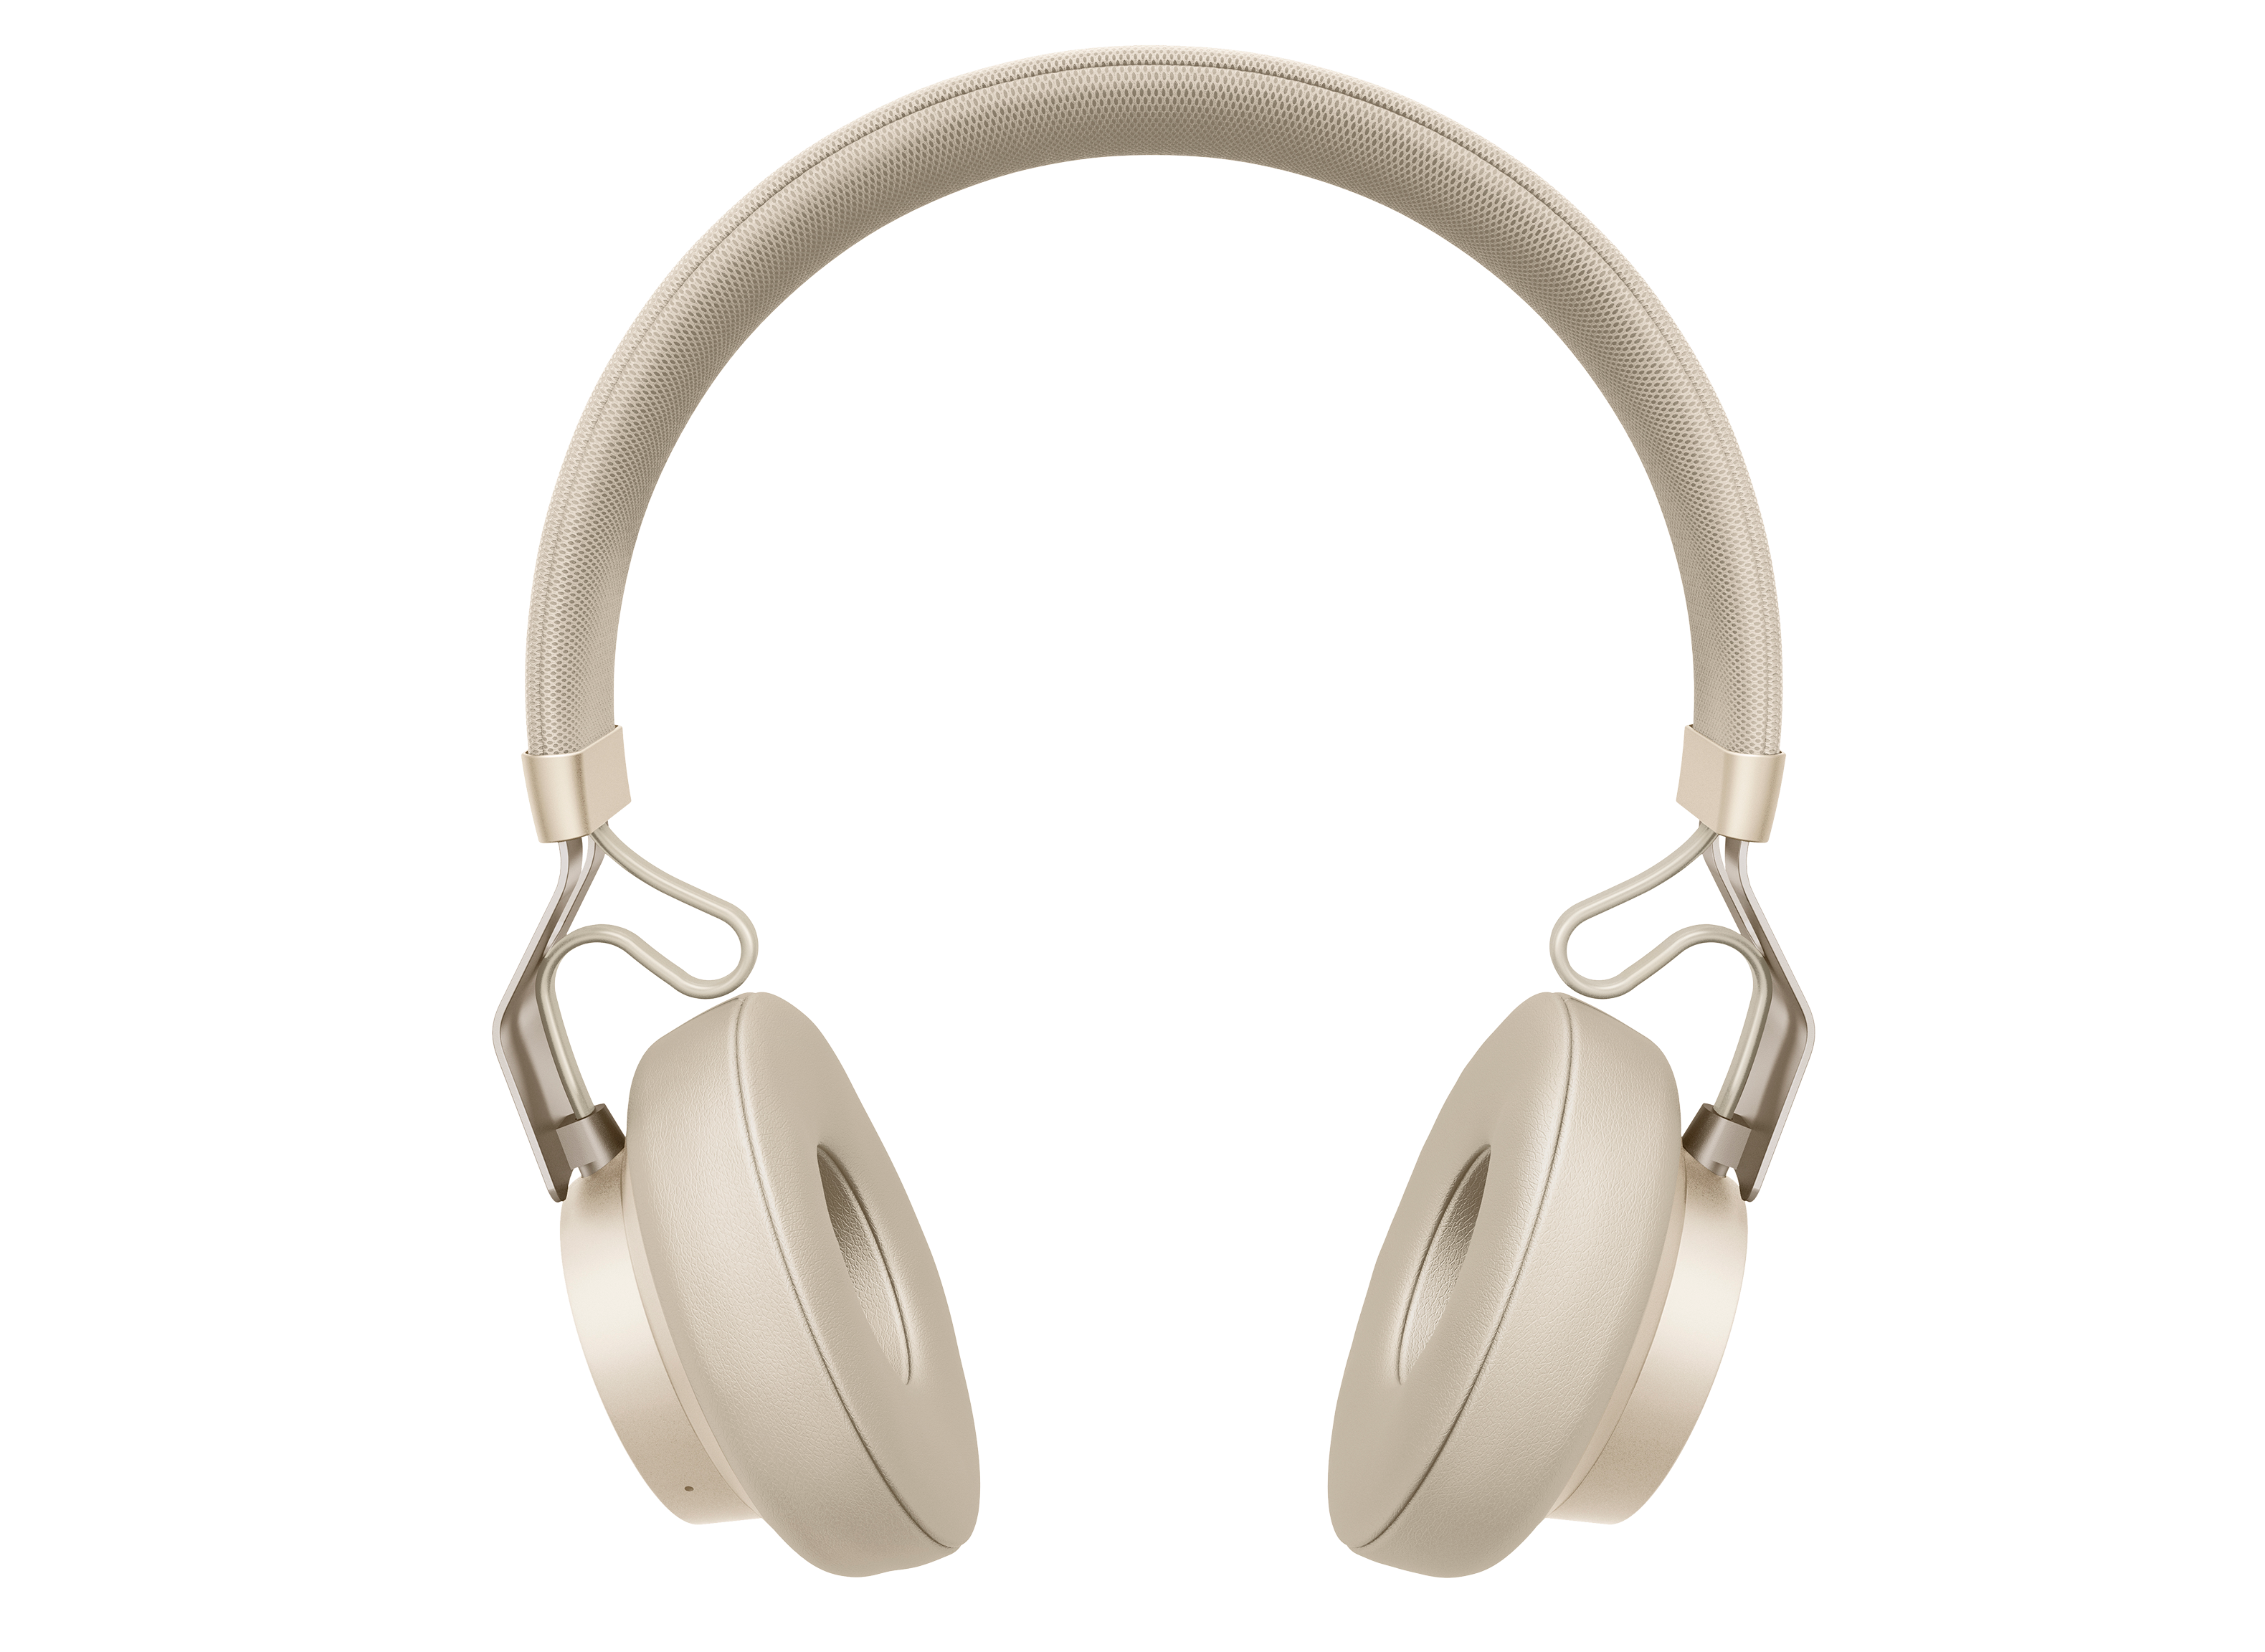 Bezienswaardigheden bekijken Begroeten Legacy Jabra Move Style Edition Headphone Review - Consumer Reports